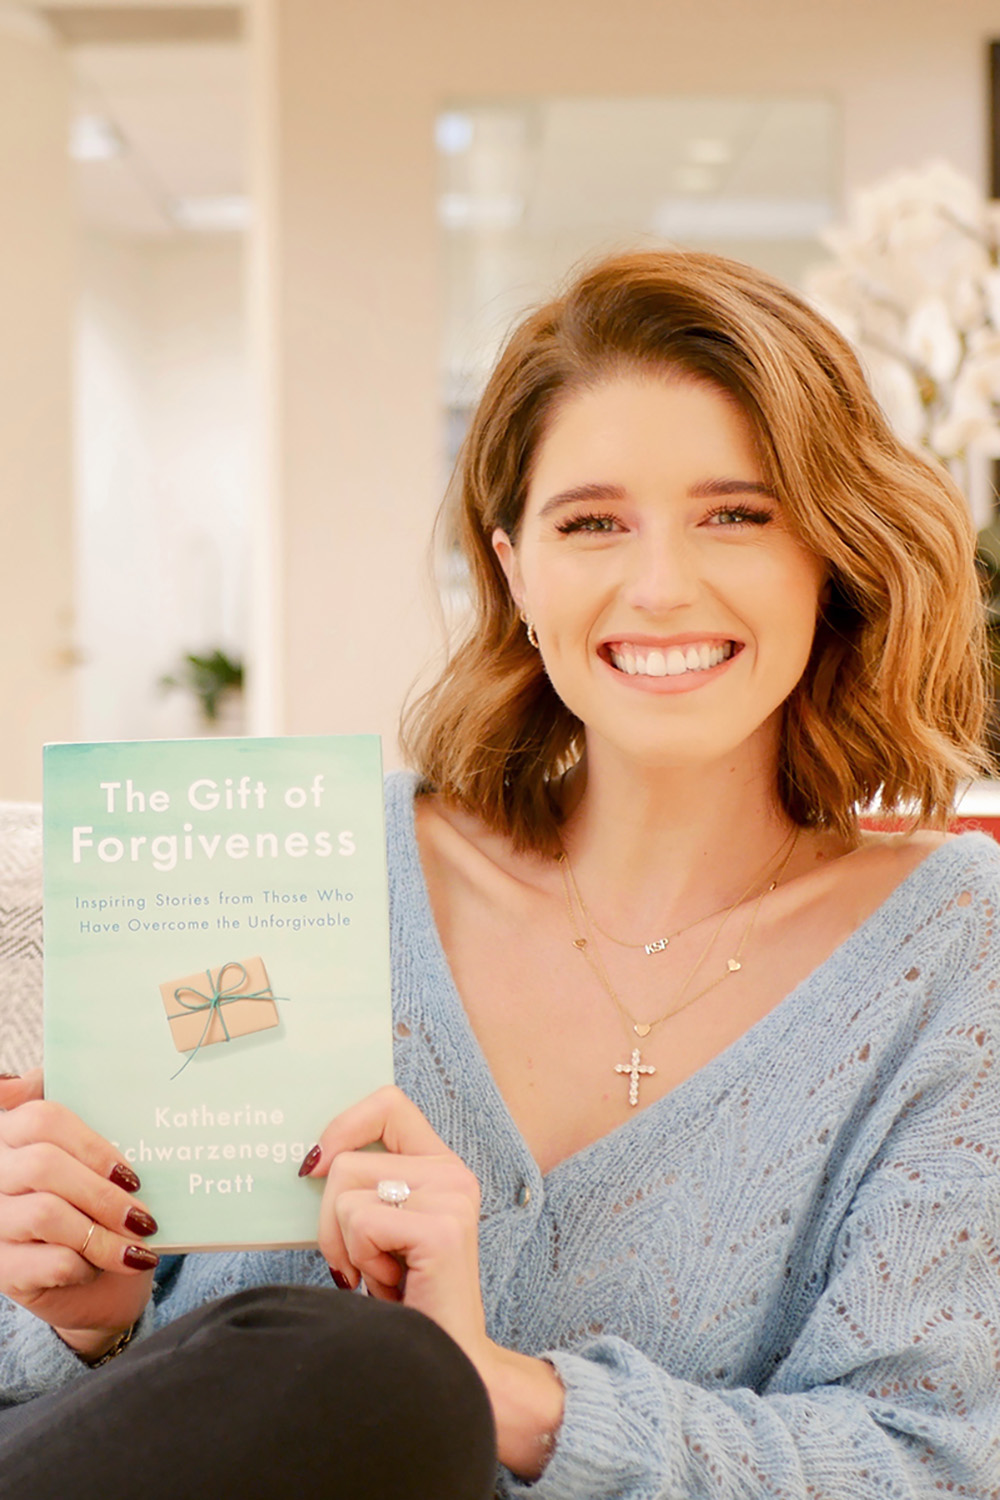 Кэтрин Шварценеггер Пратт со своей книгой «Дар прощения: вдохновляющие истории тех, кто преодолел непростительное»